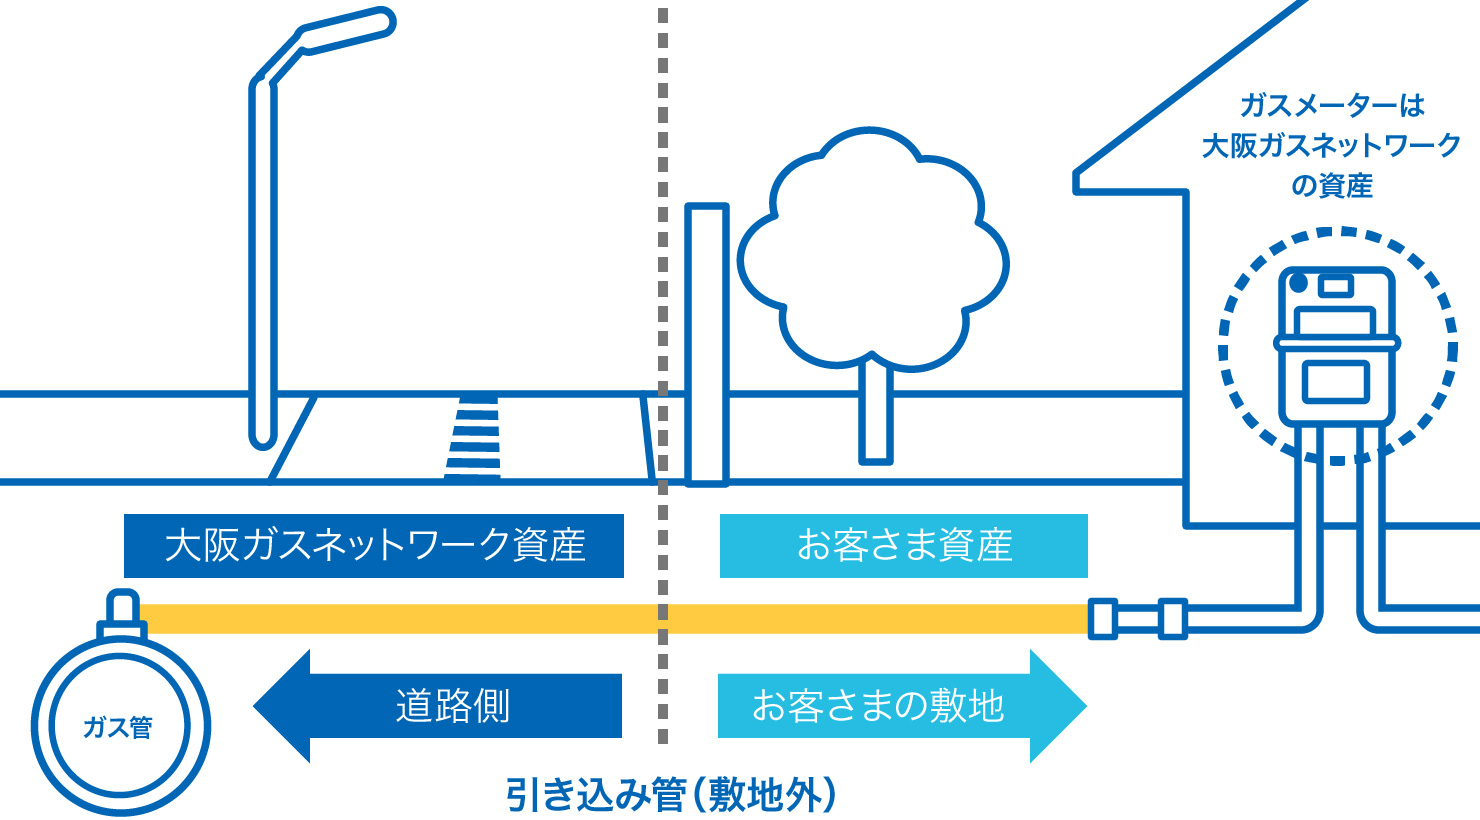 ガス設備には、お客さま資産となるものと大阪ガス資産となるものがあります。